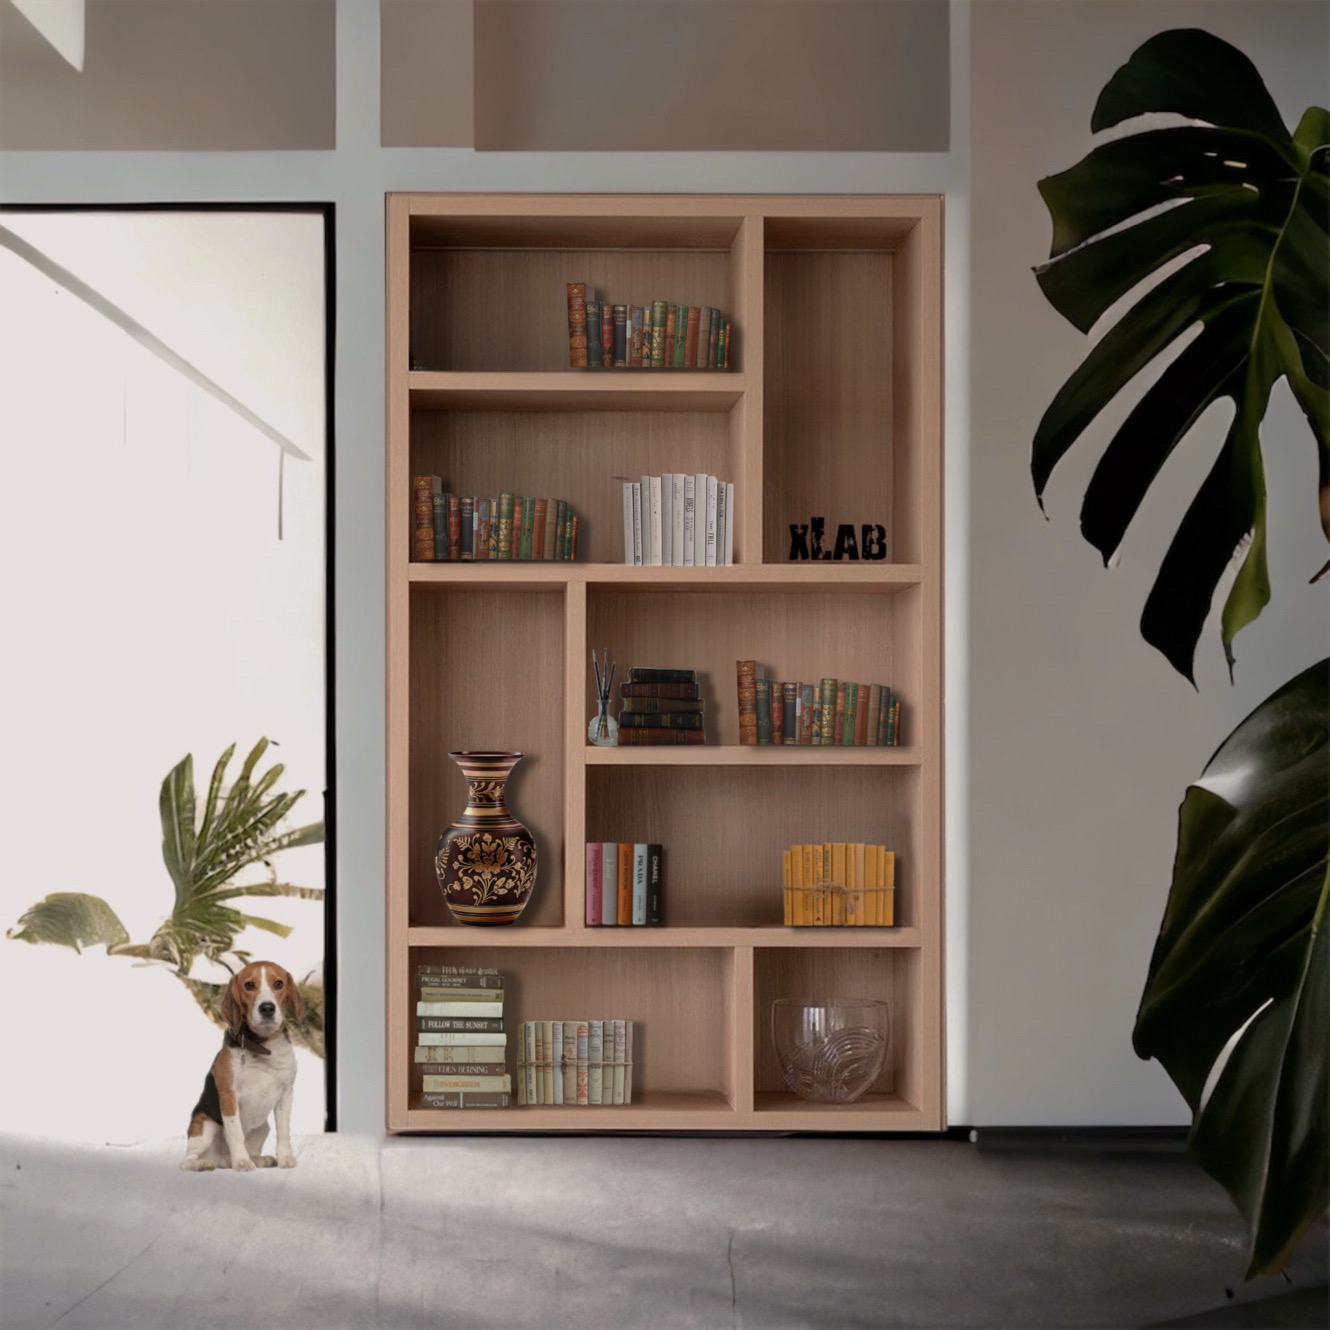 Libreria scaffale in legno naturale da incasso nel muro per nicchie o  riseghe della tua casa - XLAB Design